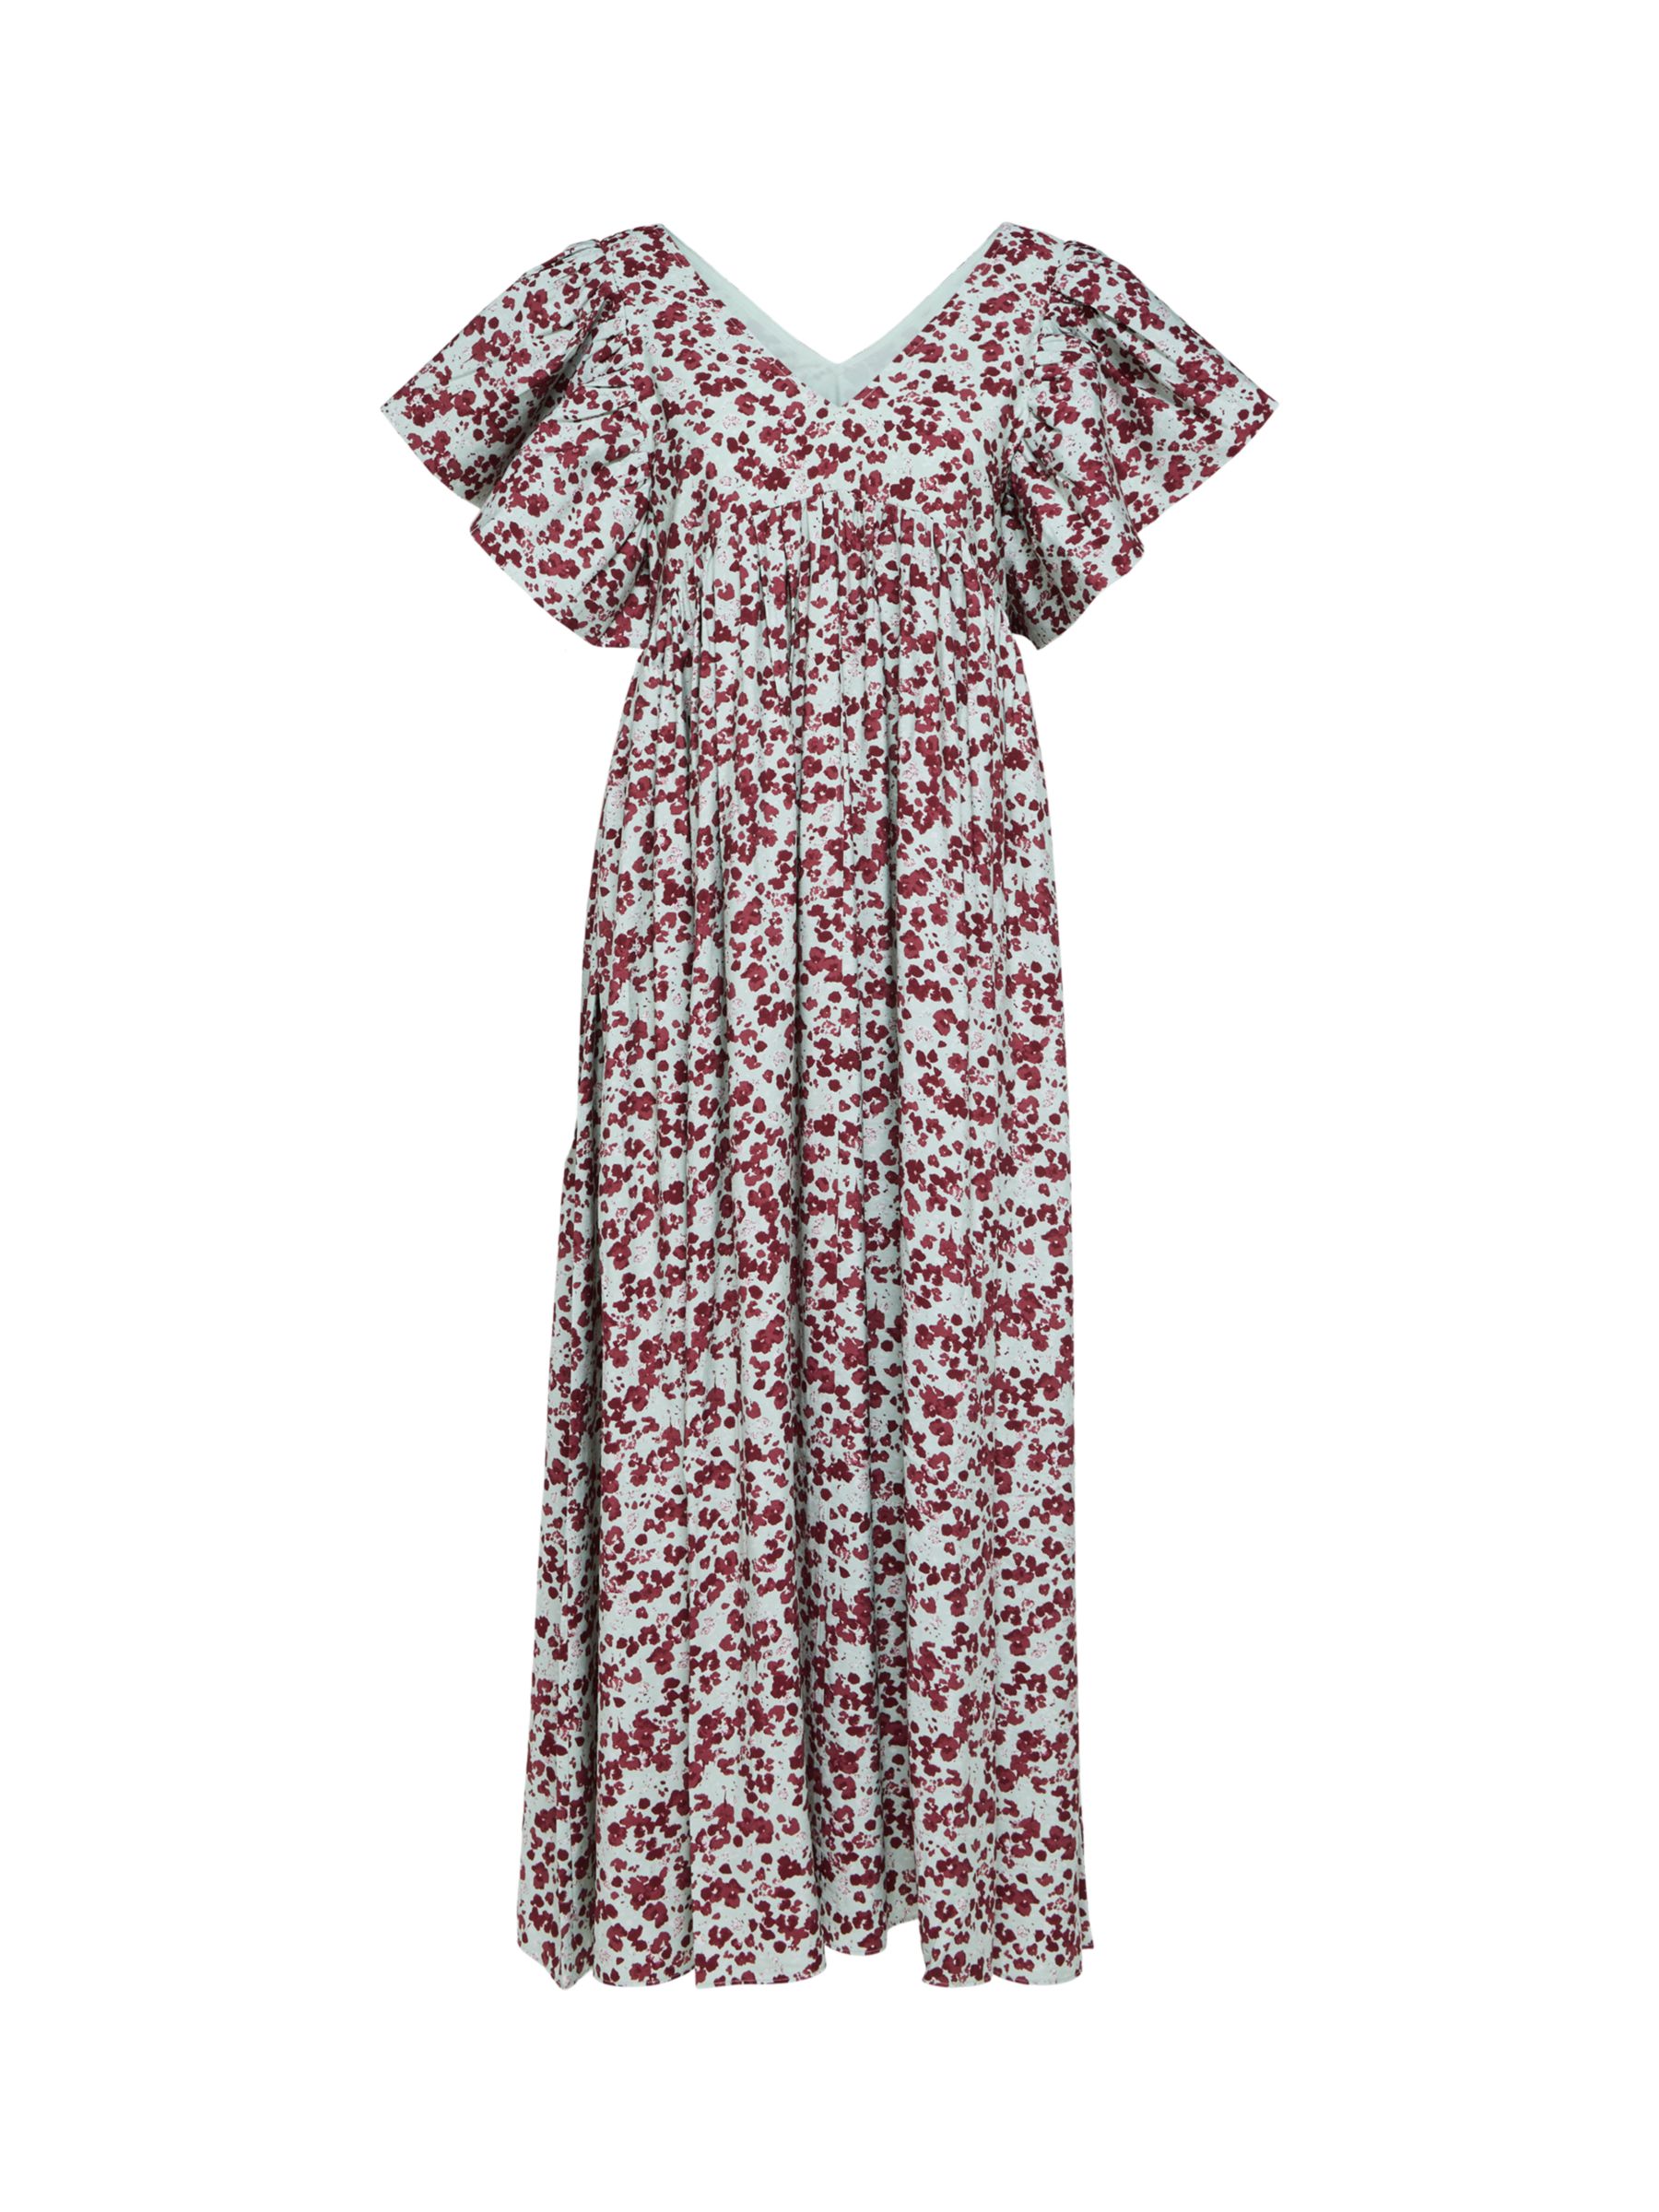 SELECTED FEMME Aqua Foam Floral Maxi Dress, Multi, 38